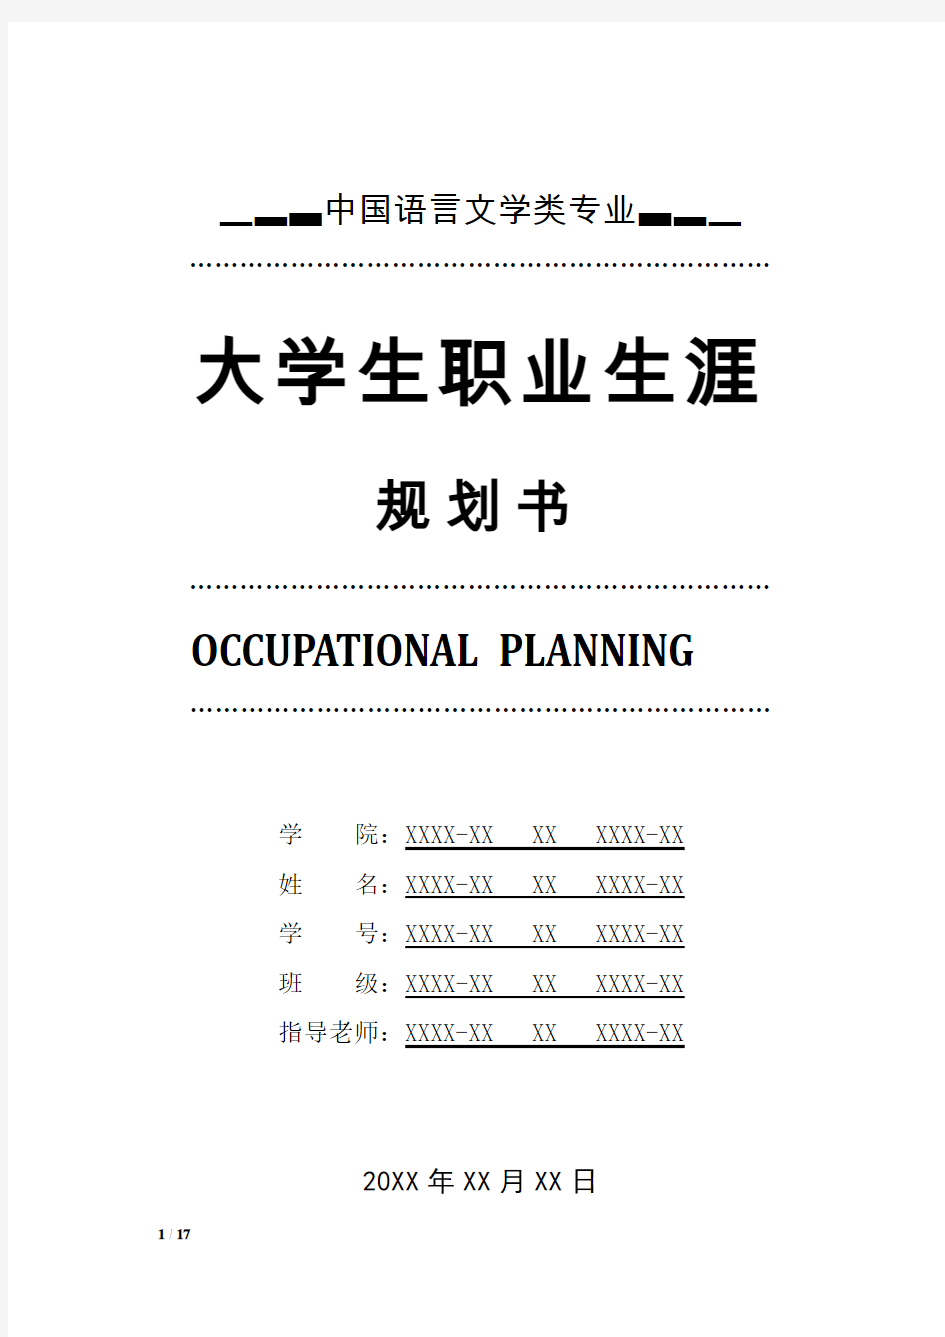 中国语言文学类专业职业生涯规划书